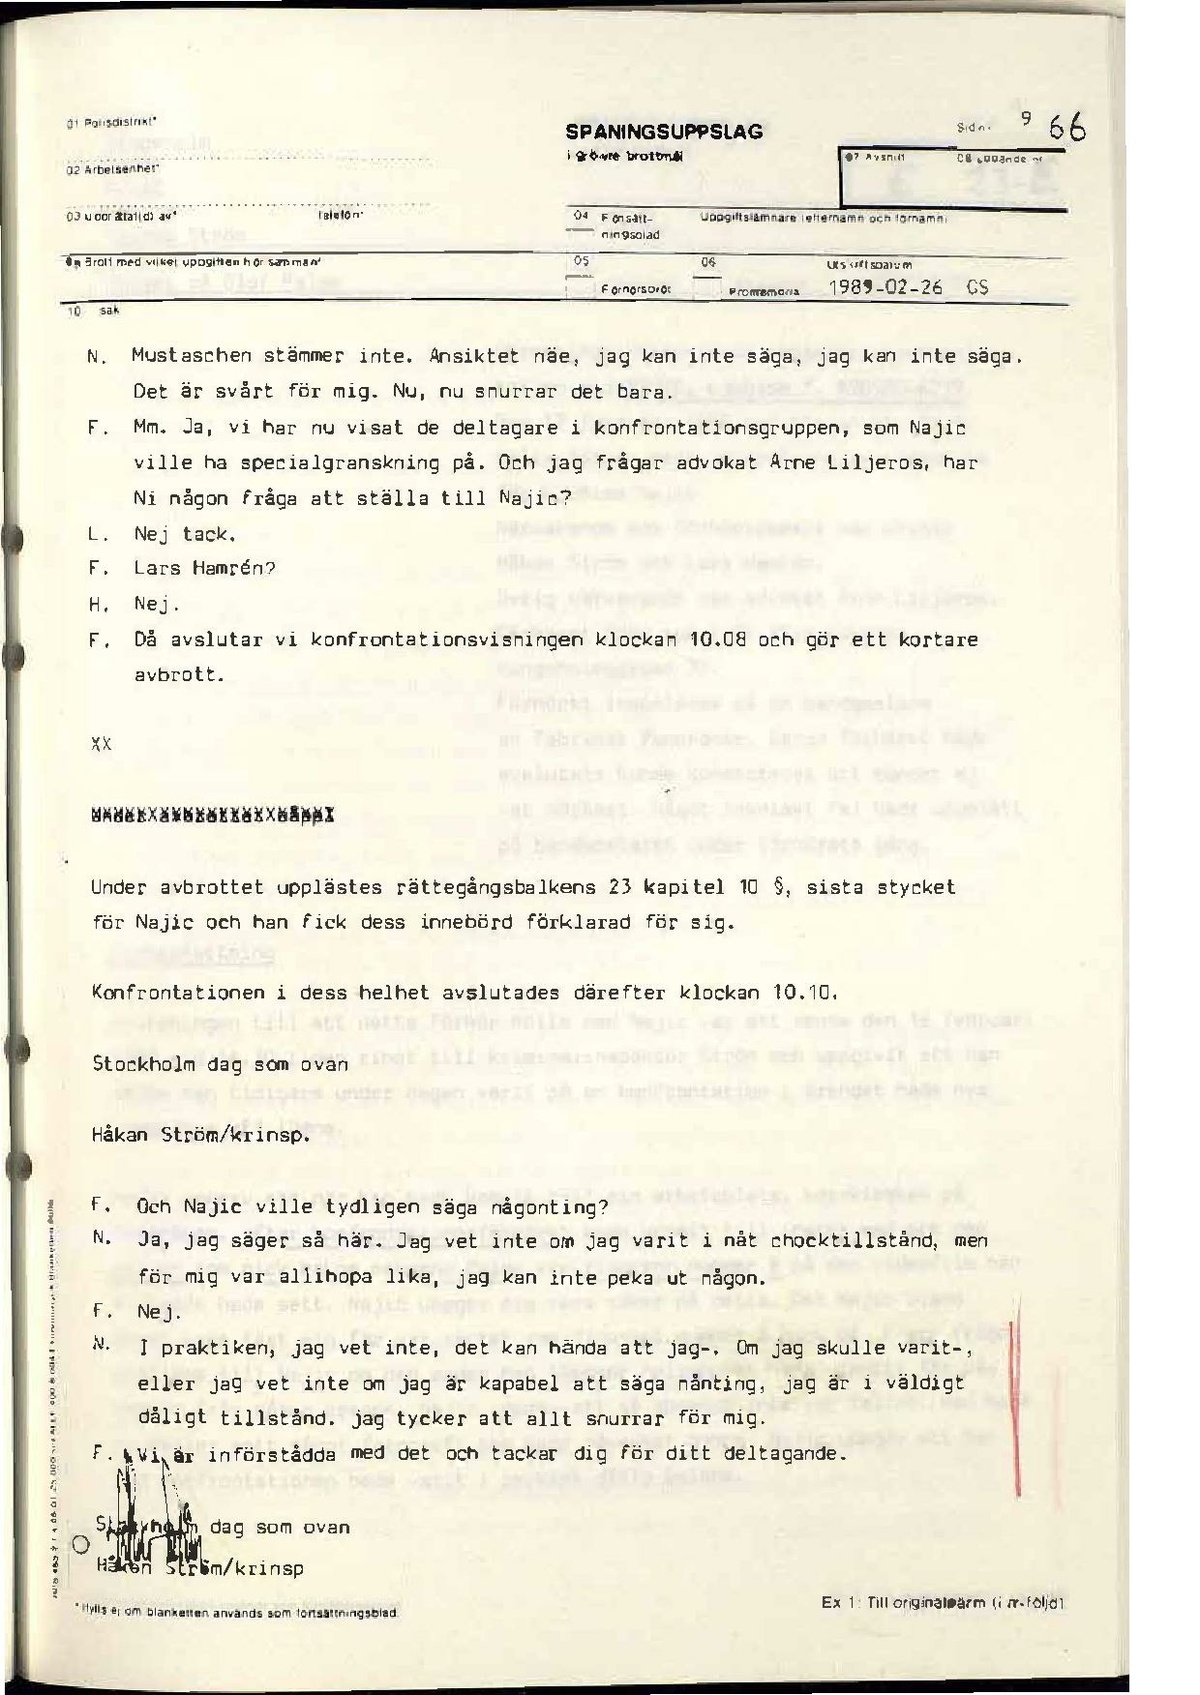 Pol-1989-02-16 0920-1010 E23-00-D Ljubisa Najic Videokonfrontstion med Christer Pettersson.pdf